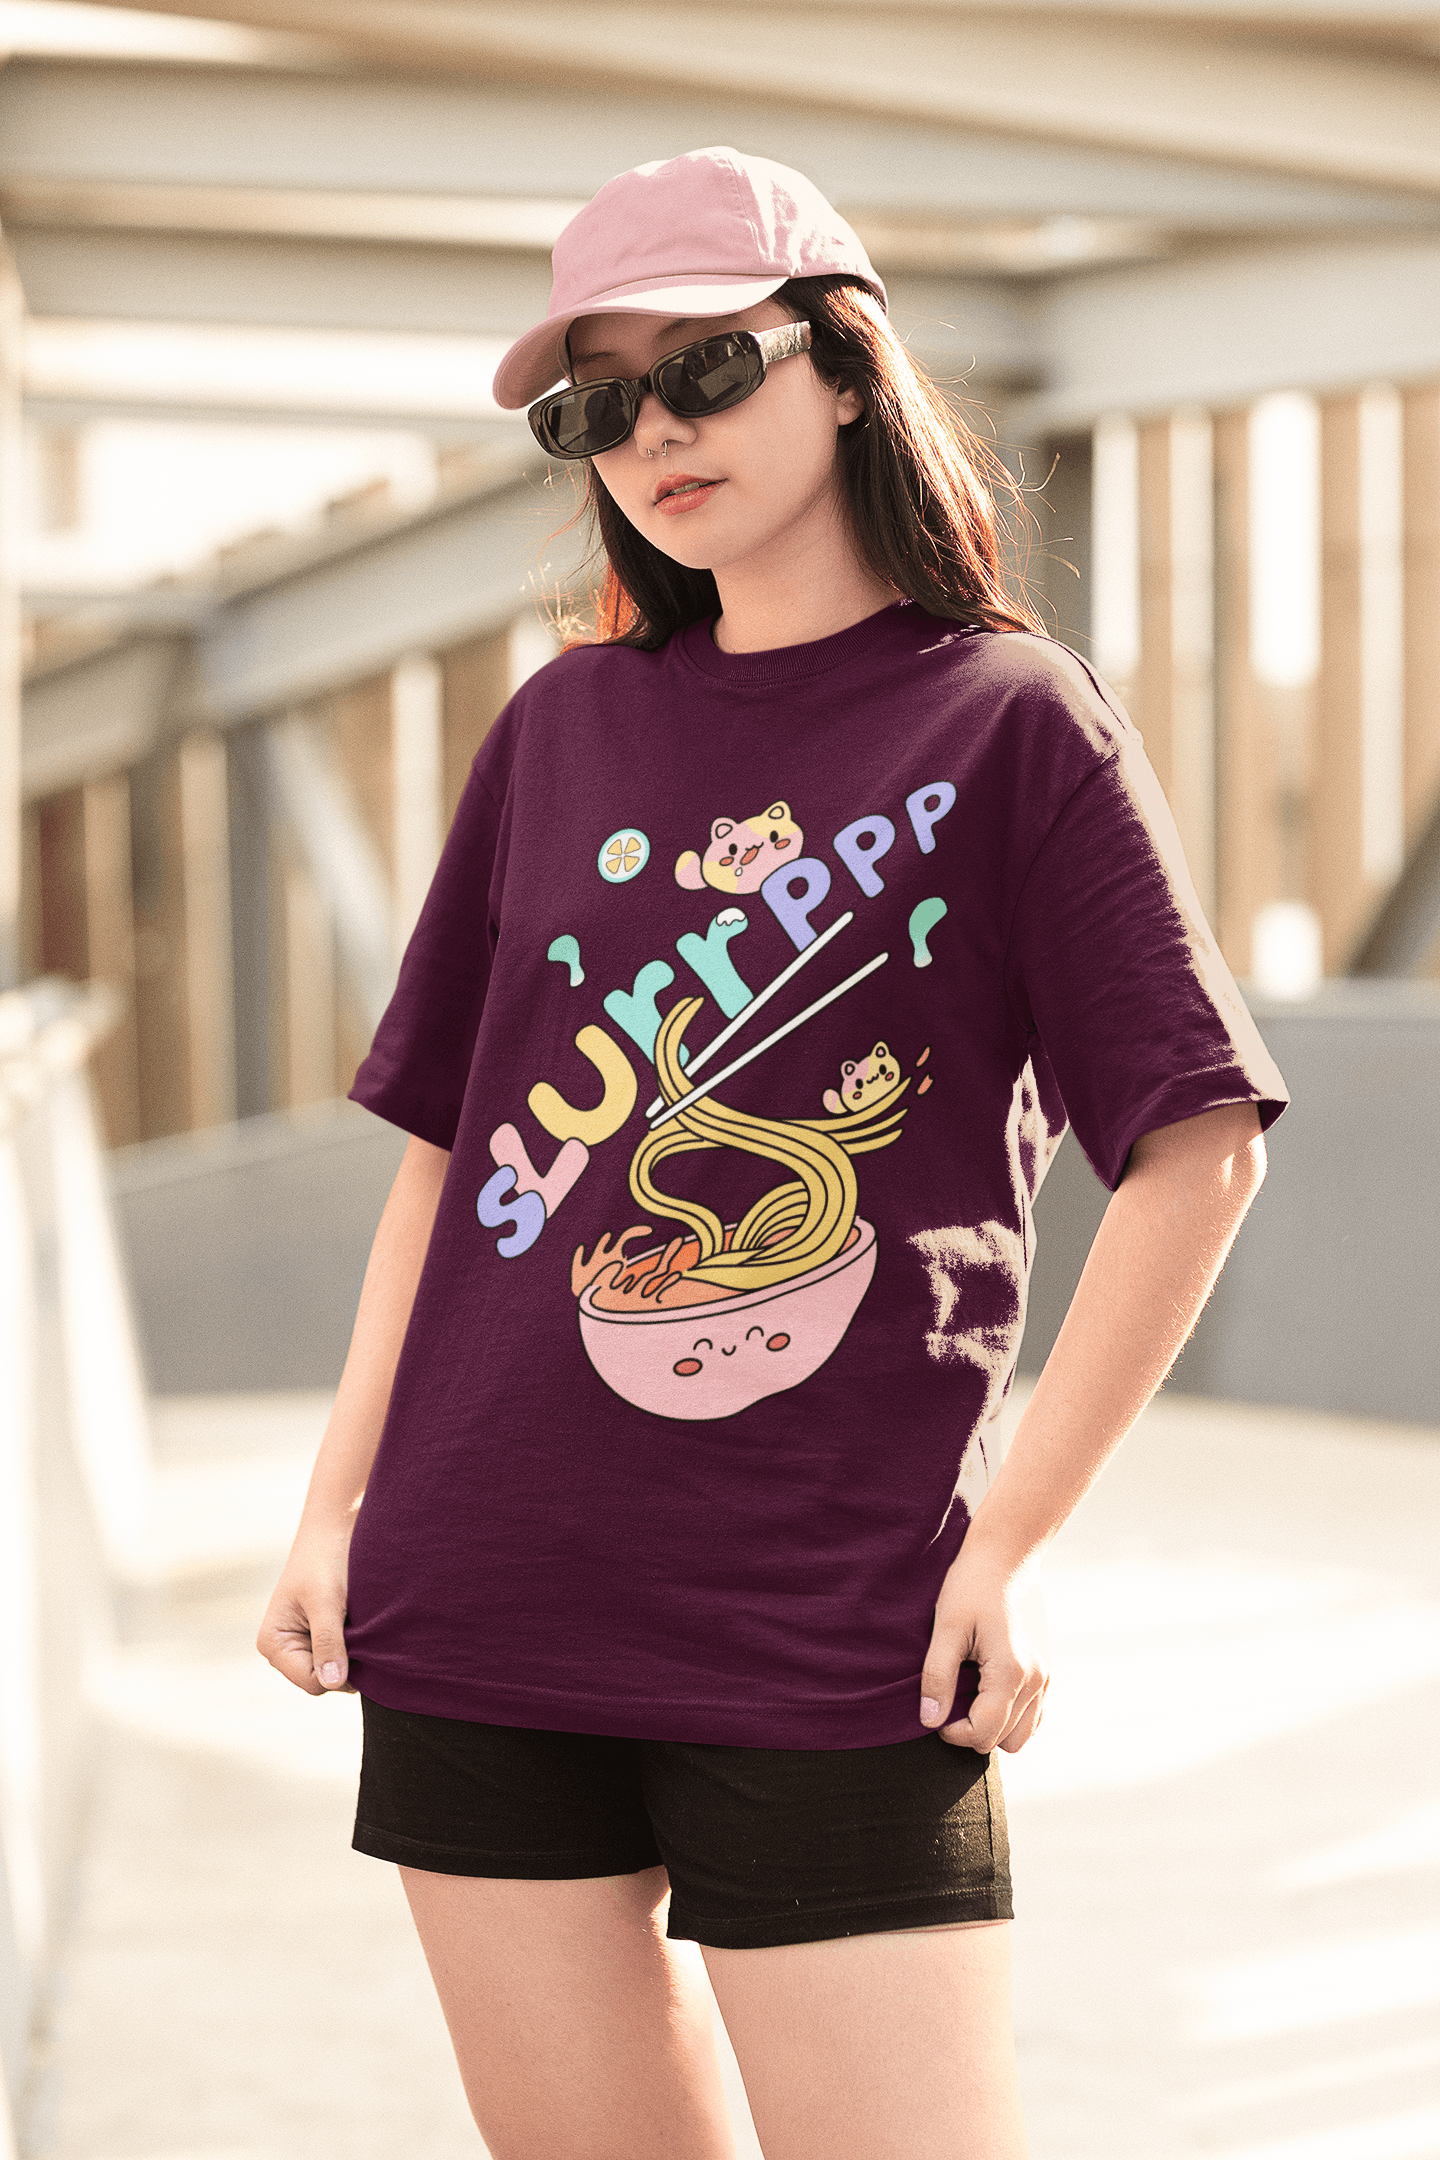 Slurp Oversized T-shirt - Unisex - Cute Stuff India